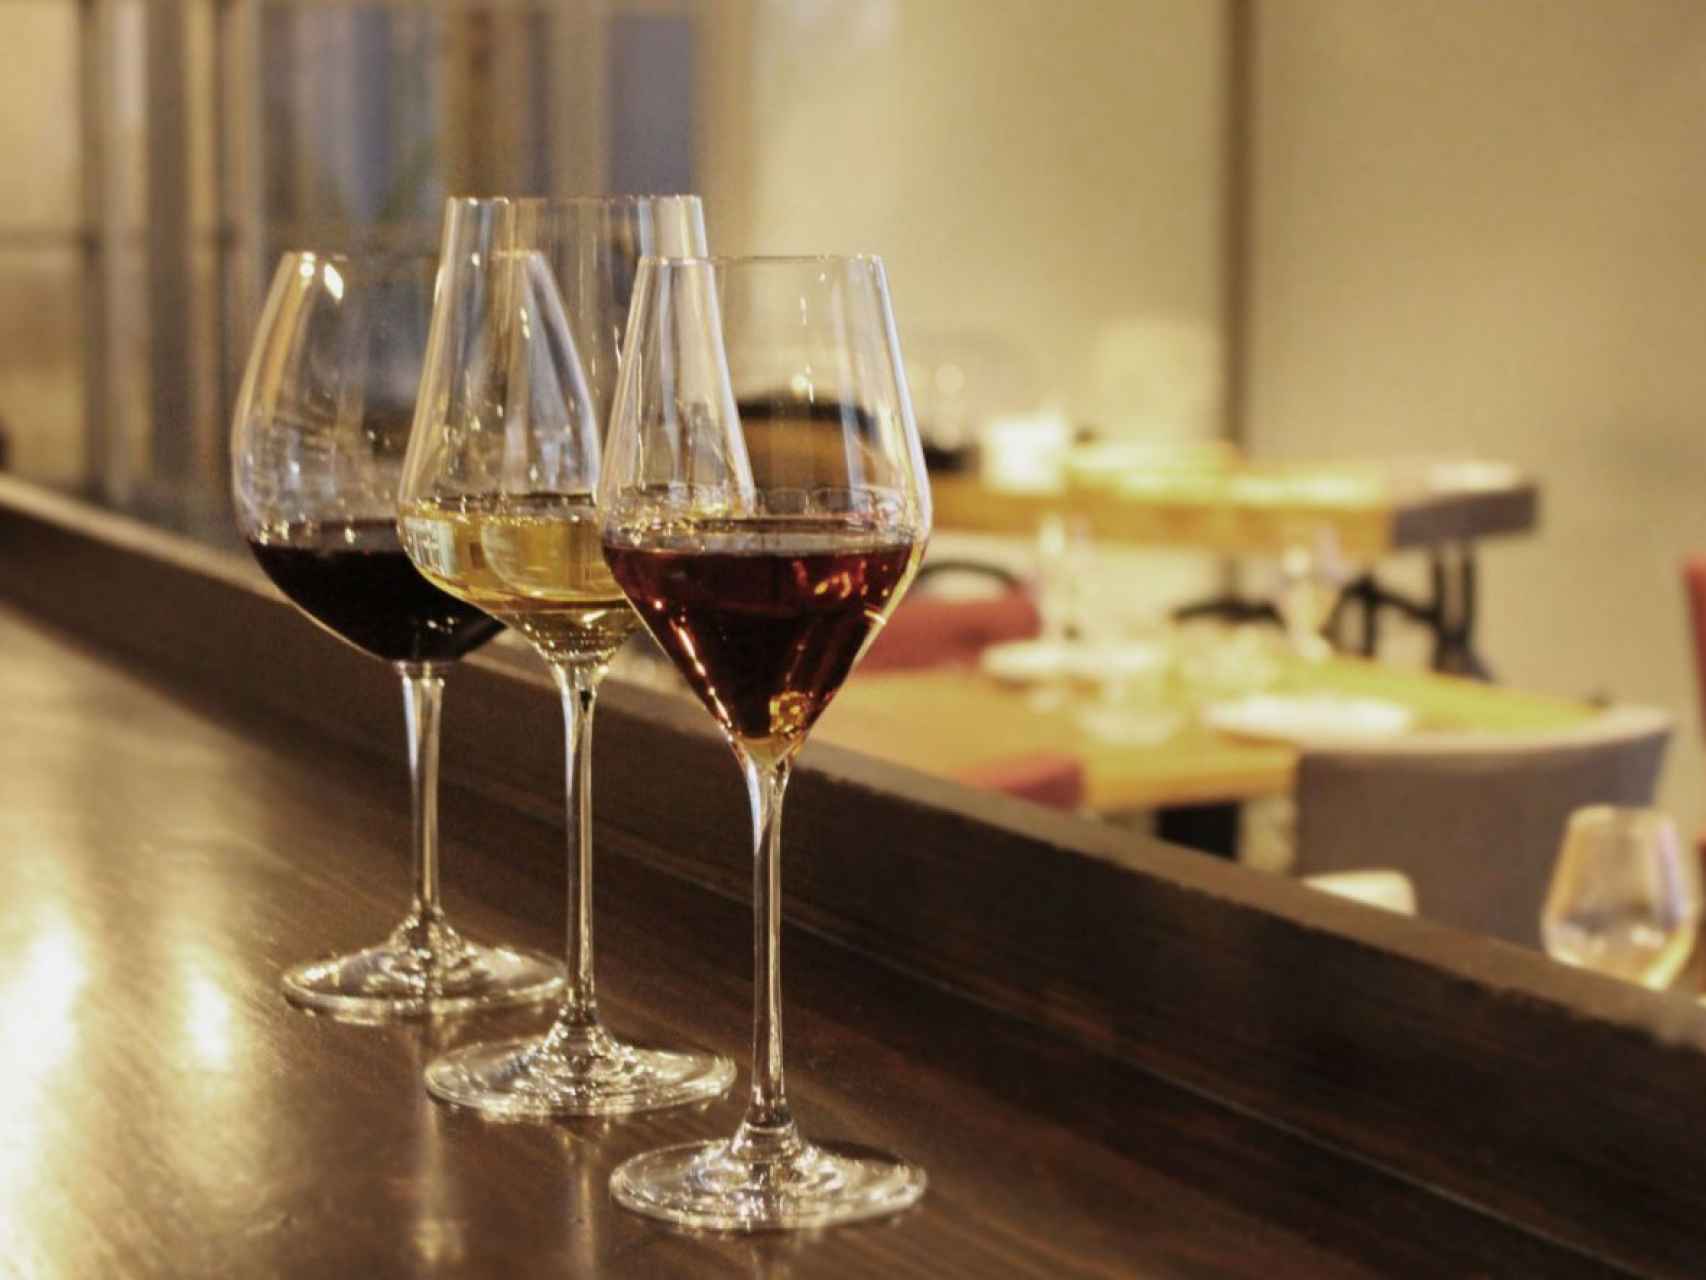 En Madrid se producen vinos tintos, blancos, rosados y espumosos.